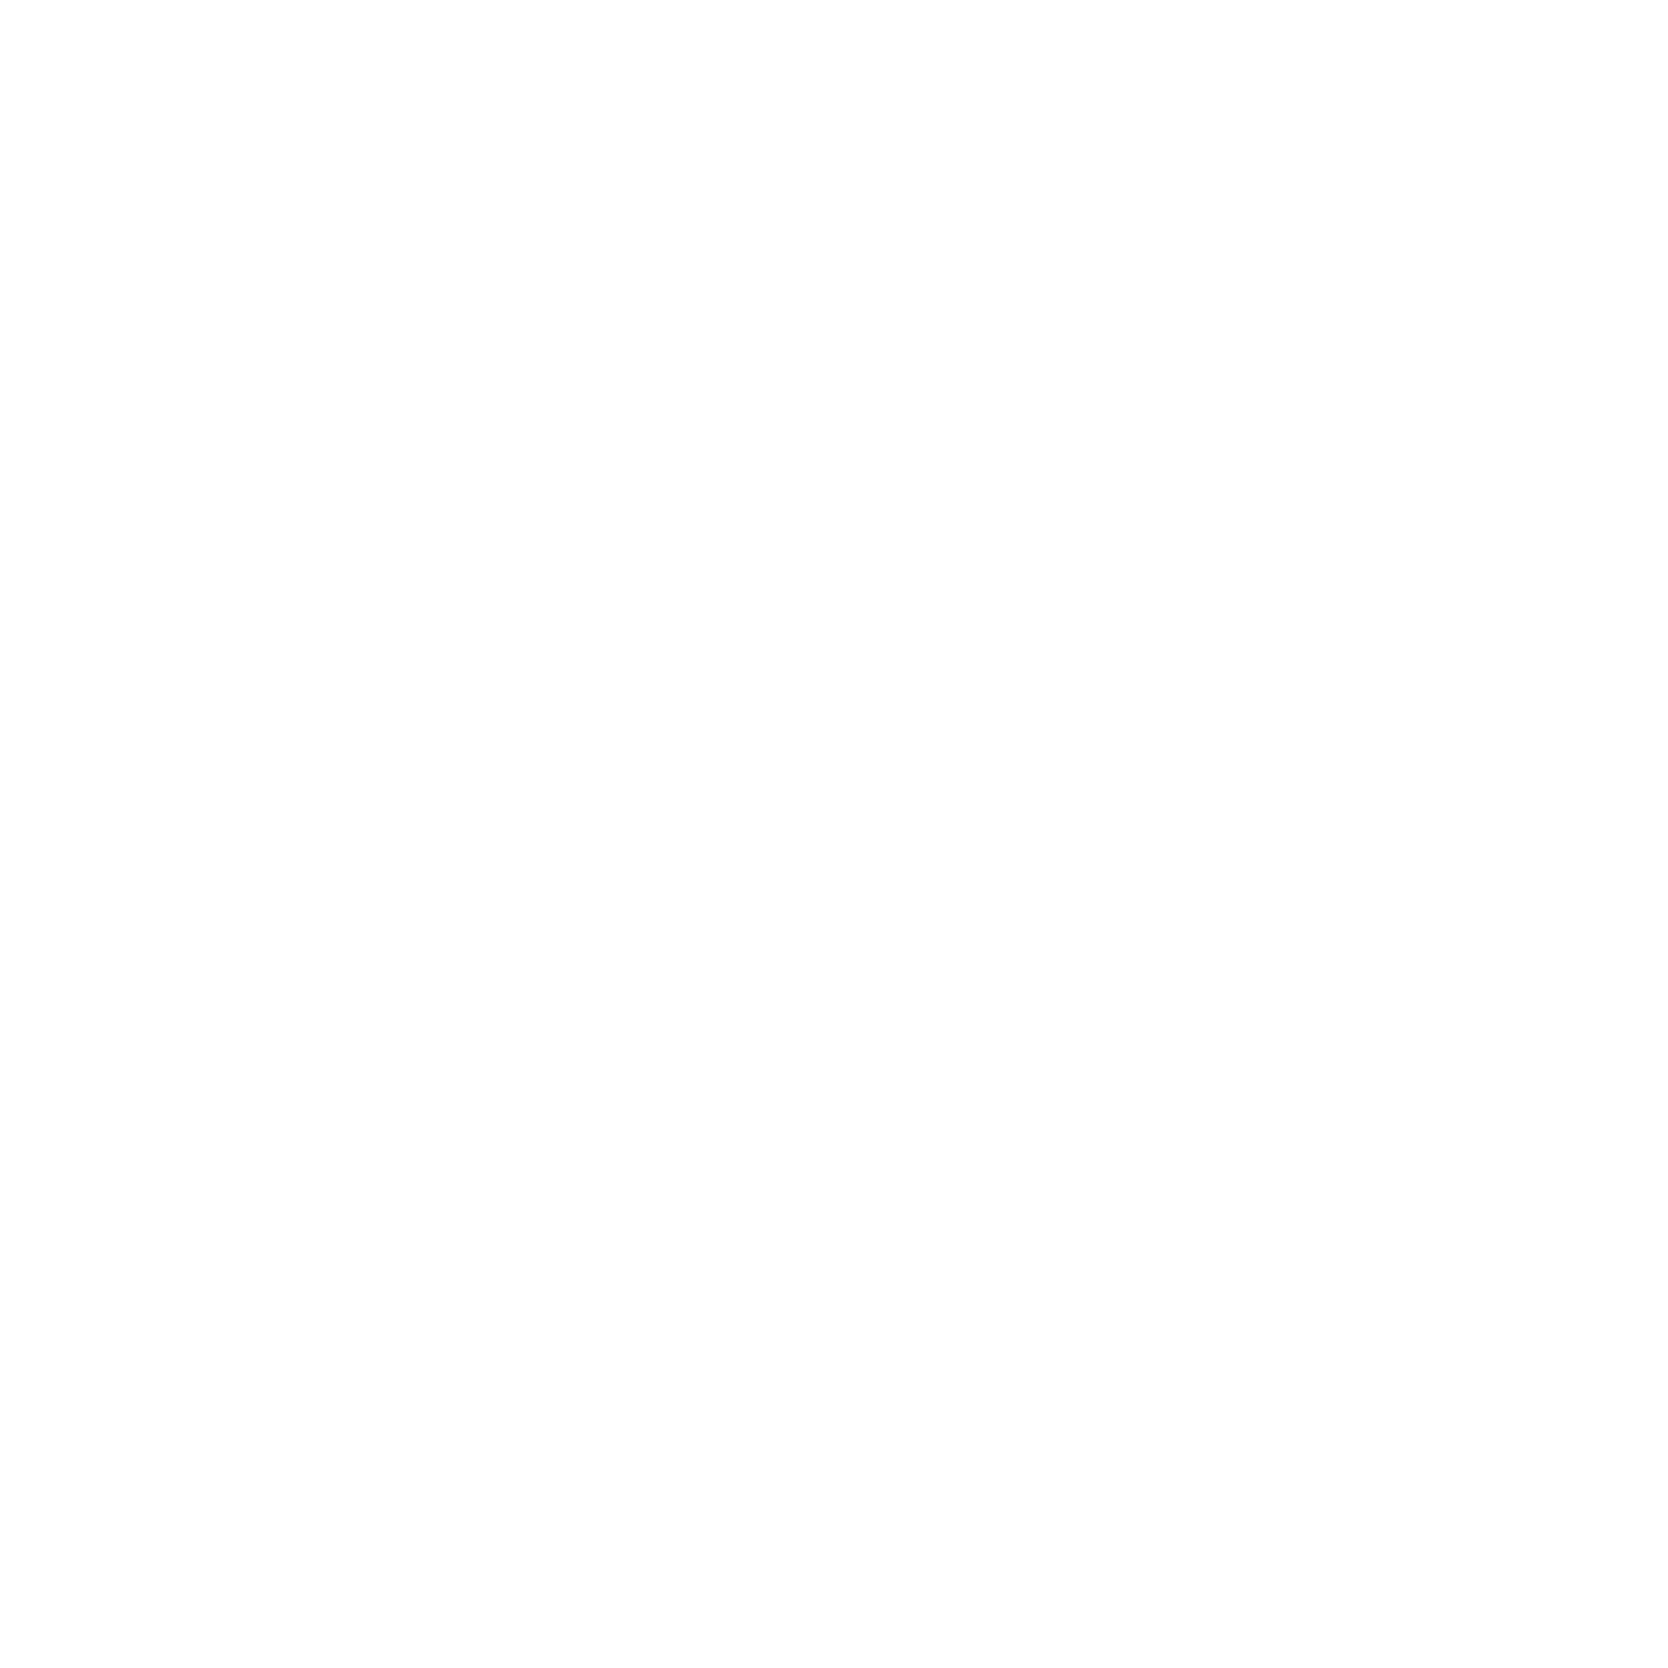 Displet Logo